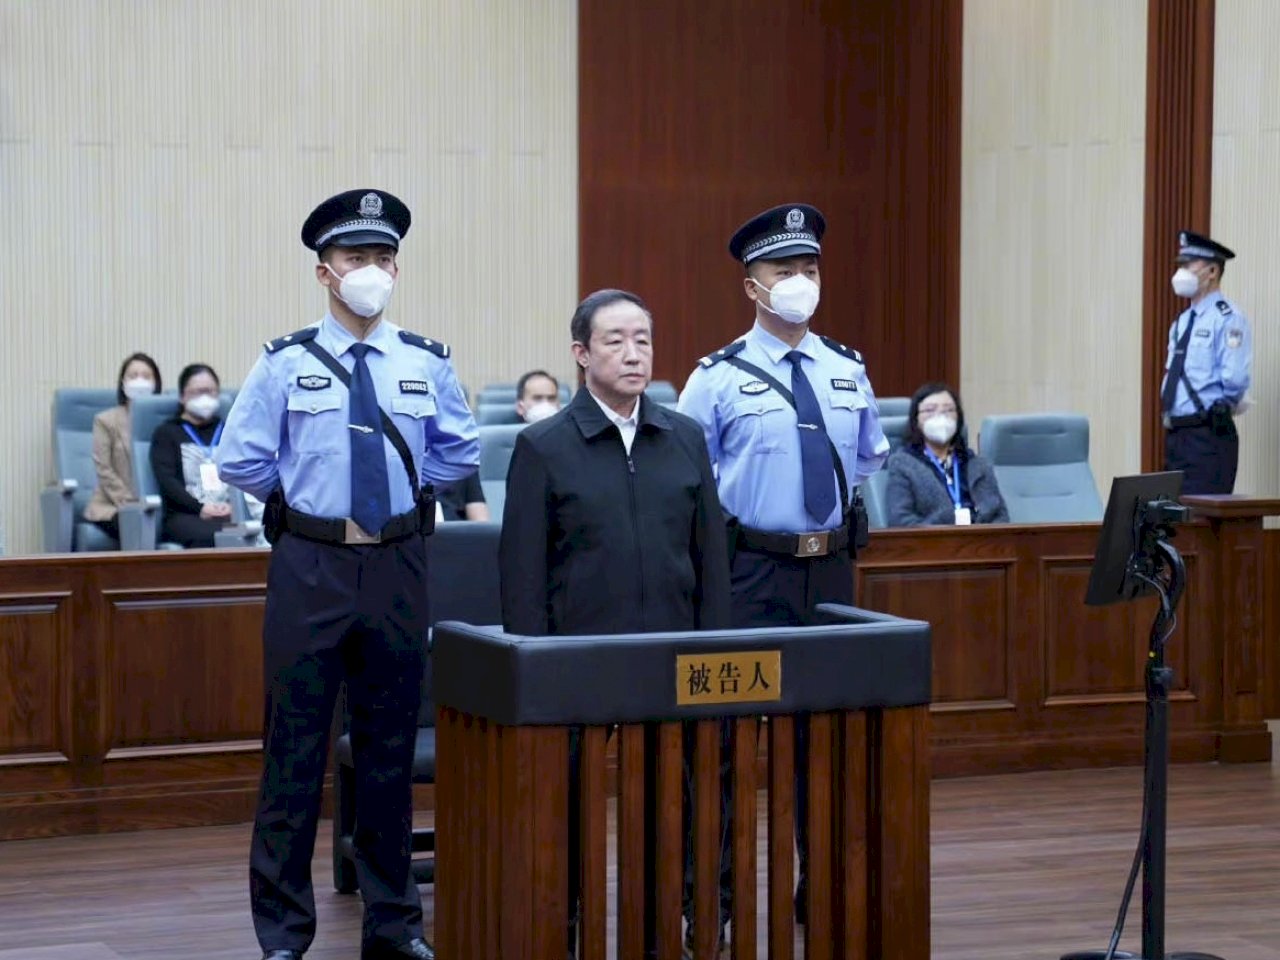 傅政華被判「死緩」 終身監禁不得假釋